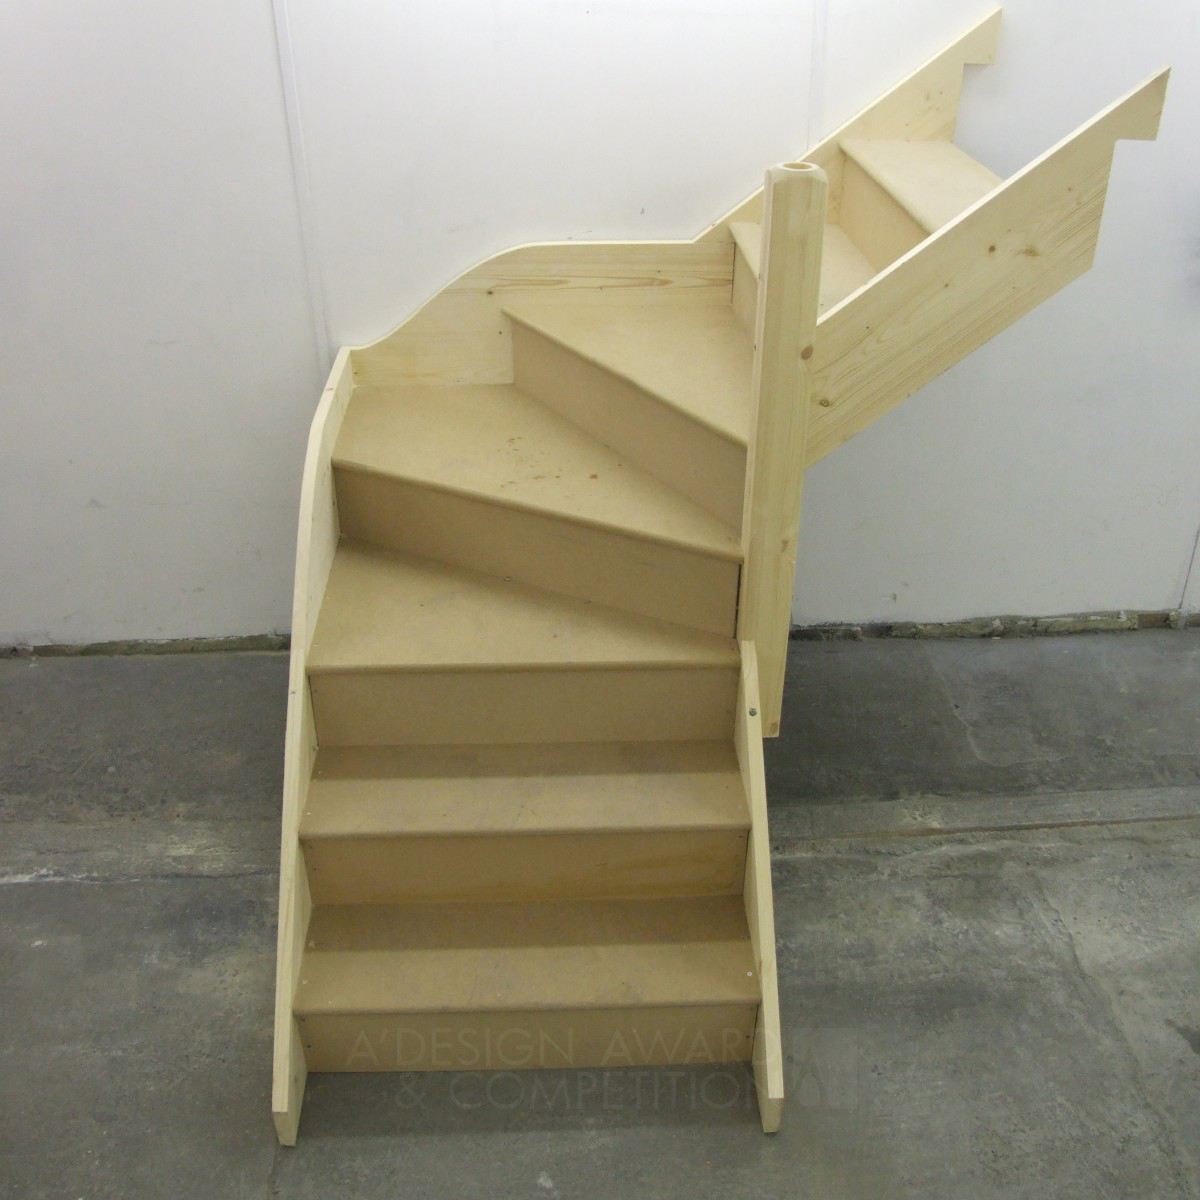 Kwik Stairs Flat Pack stair kit by Jon Hyams